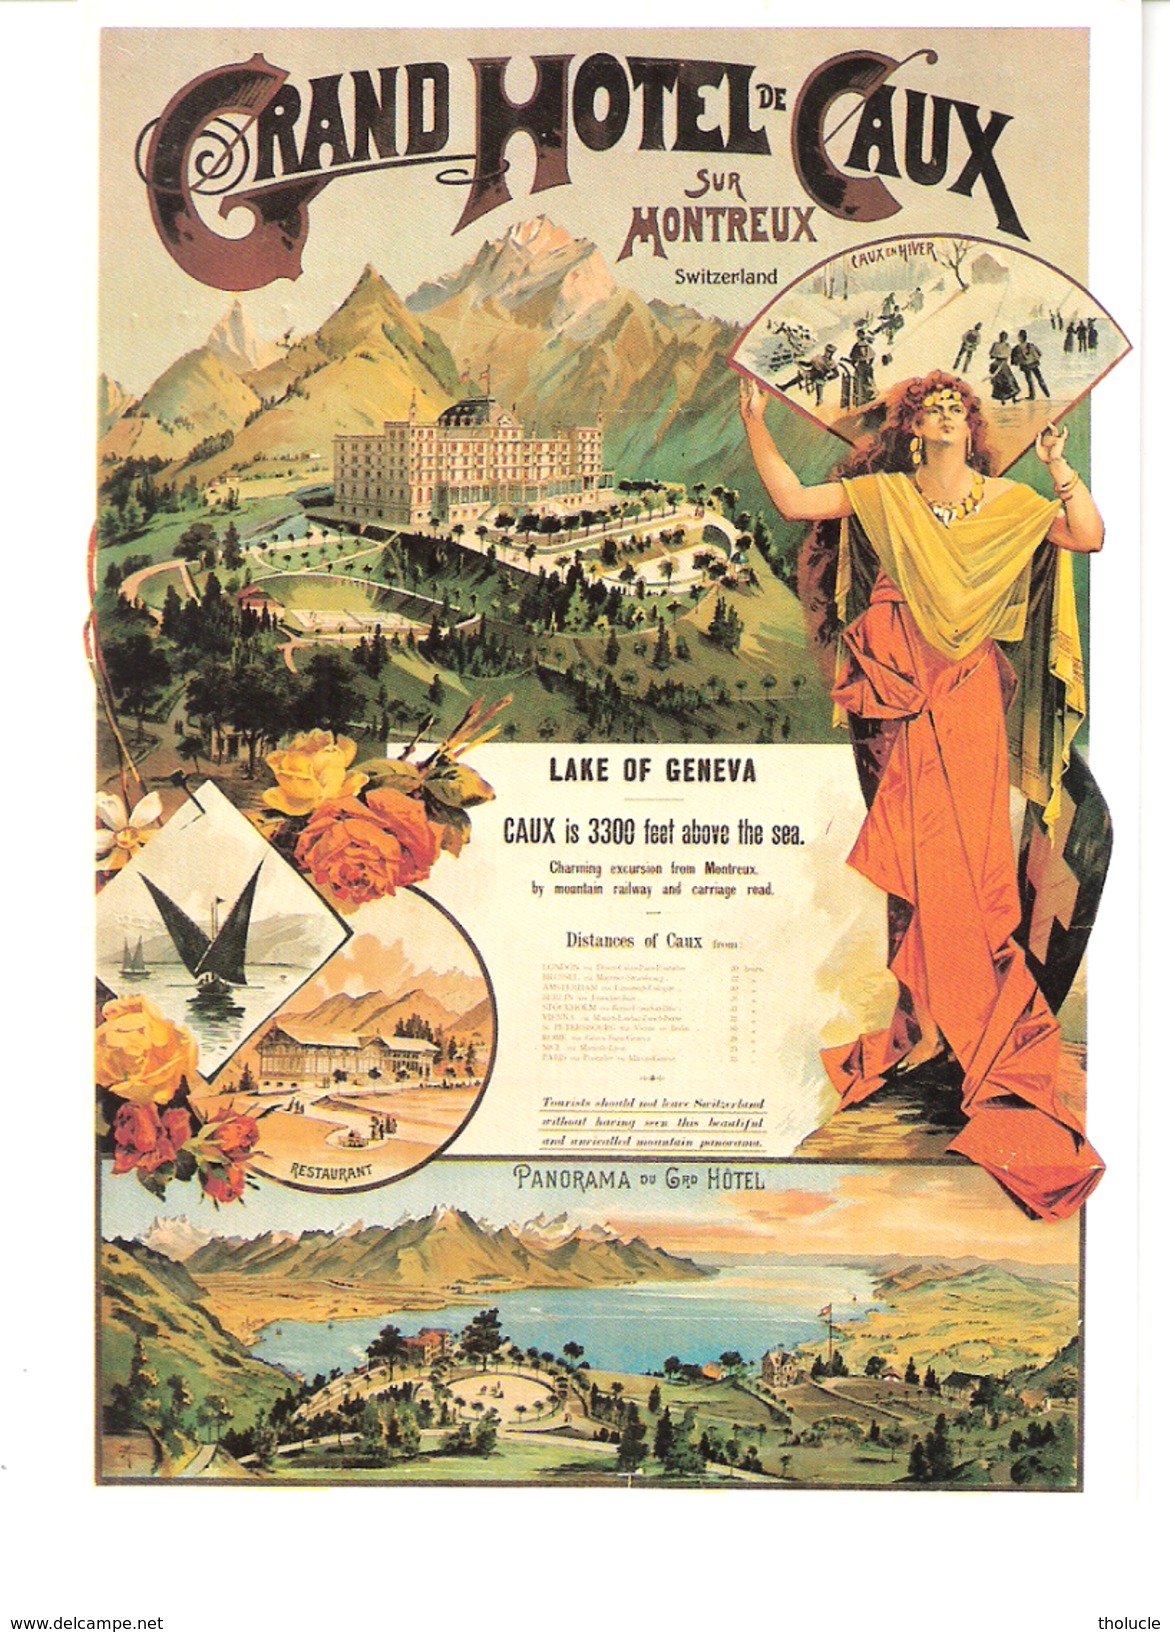 Switzerland-Schweiz-Suisse-Grand Hotel De Caux Sur Montreux (Vaud)-Reproduction Affiche De 1890-verlag Biregg AG, Luzern - Montreux